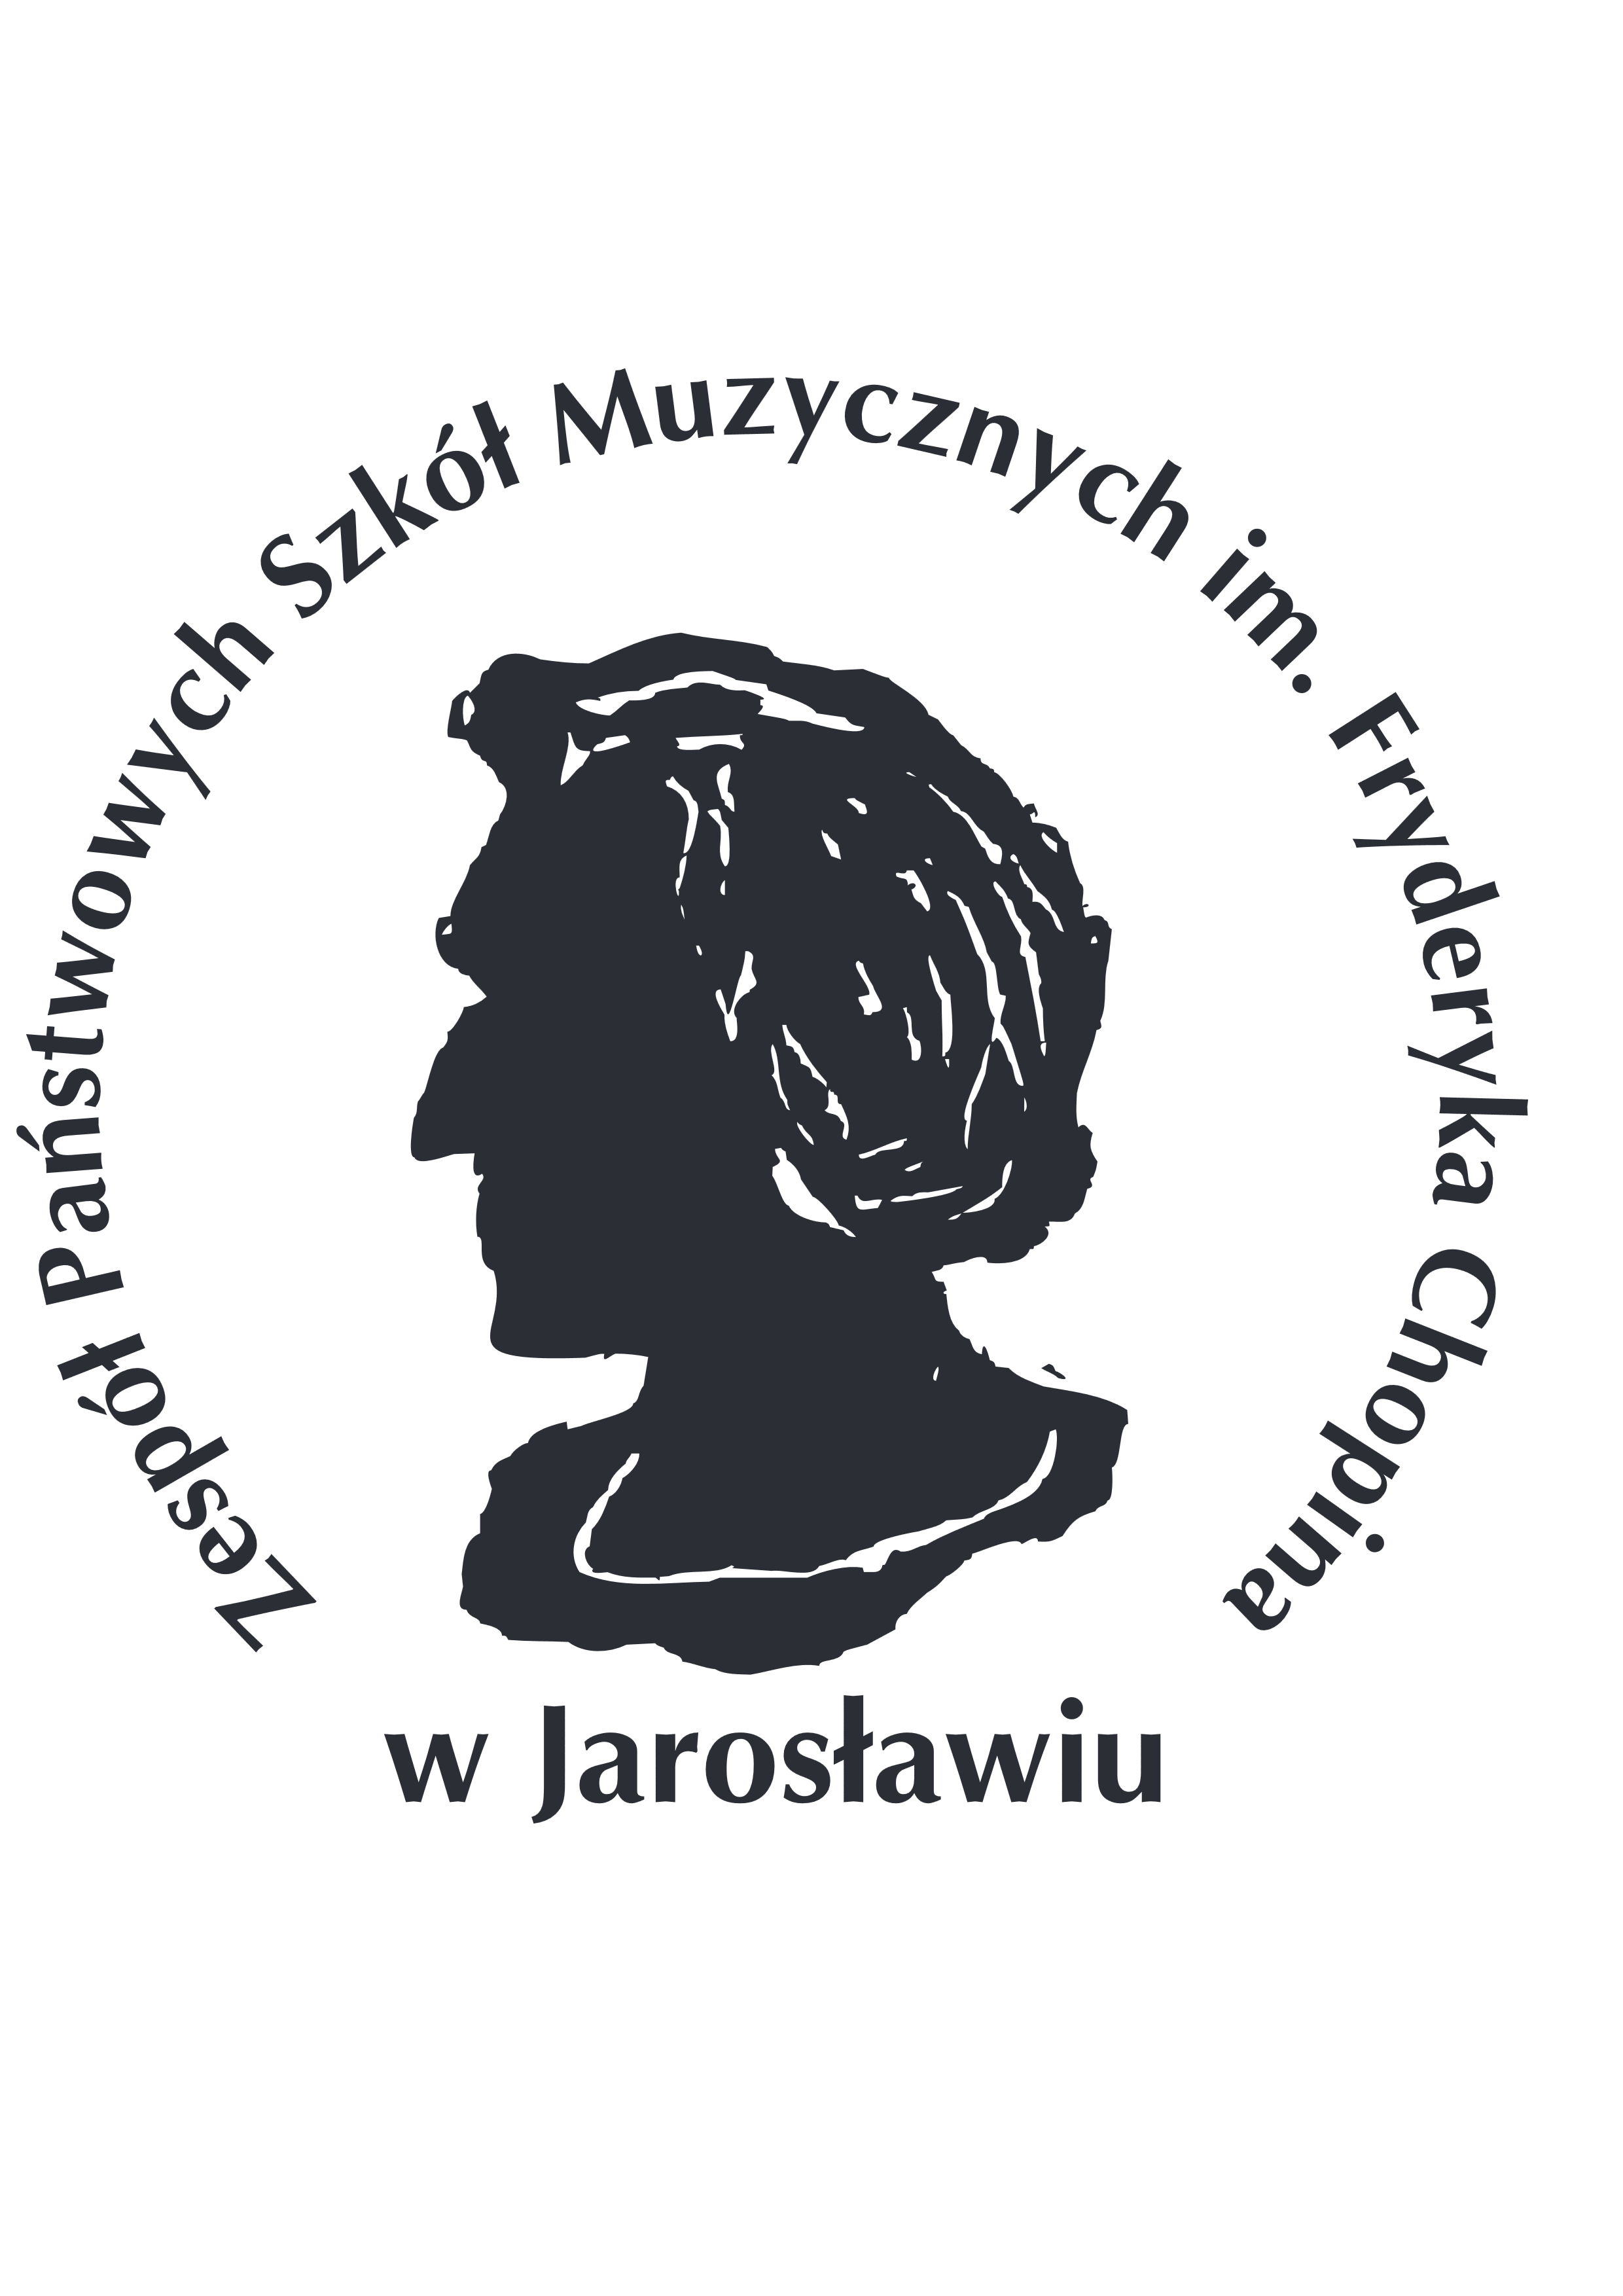 Logo z czarną grafiką popiersia Fryderyka Chopina na przeźroczystym tle na wzór okrągłego stempla z otaczający napisem Zespół Państwowych Szkół Muzycznych im. Fryderyka Chopina w Jarosławiu